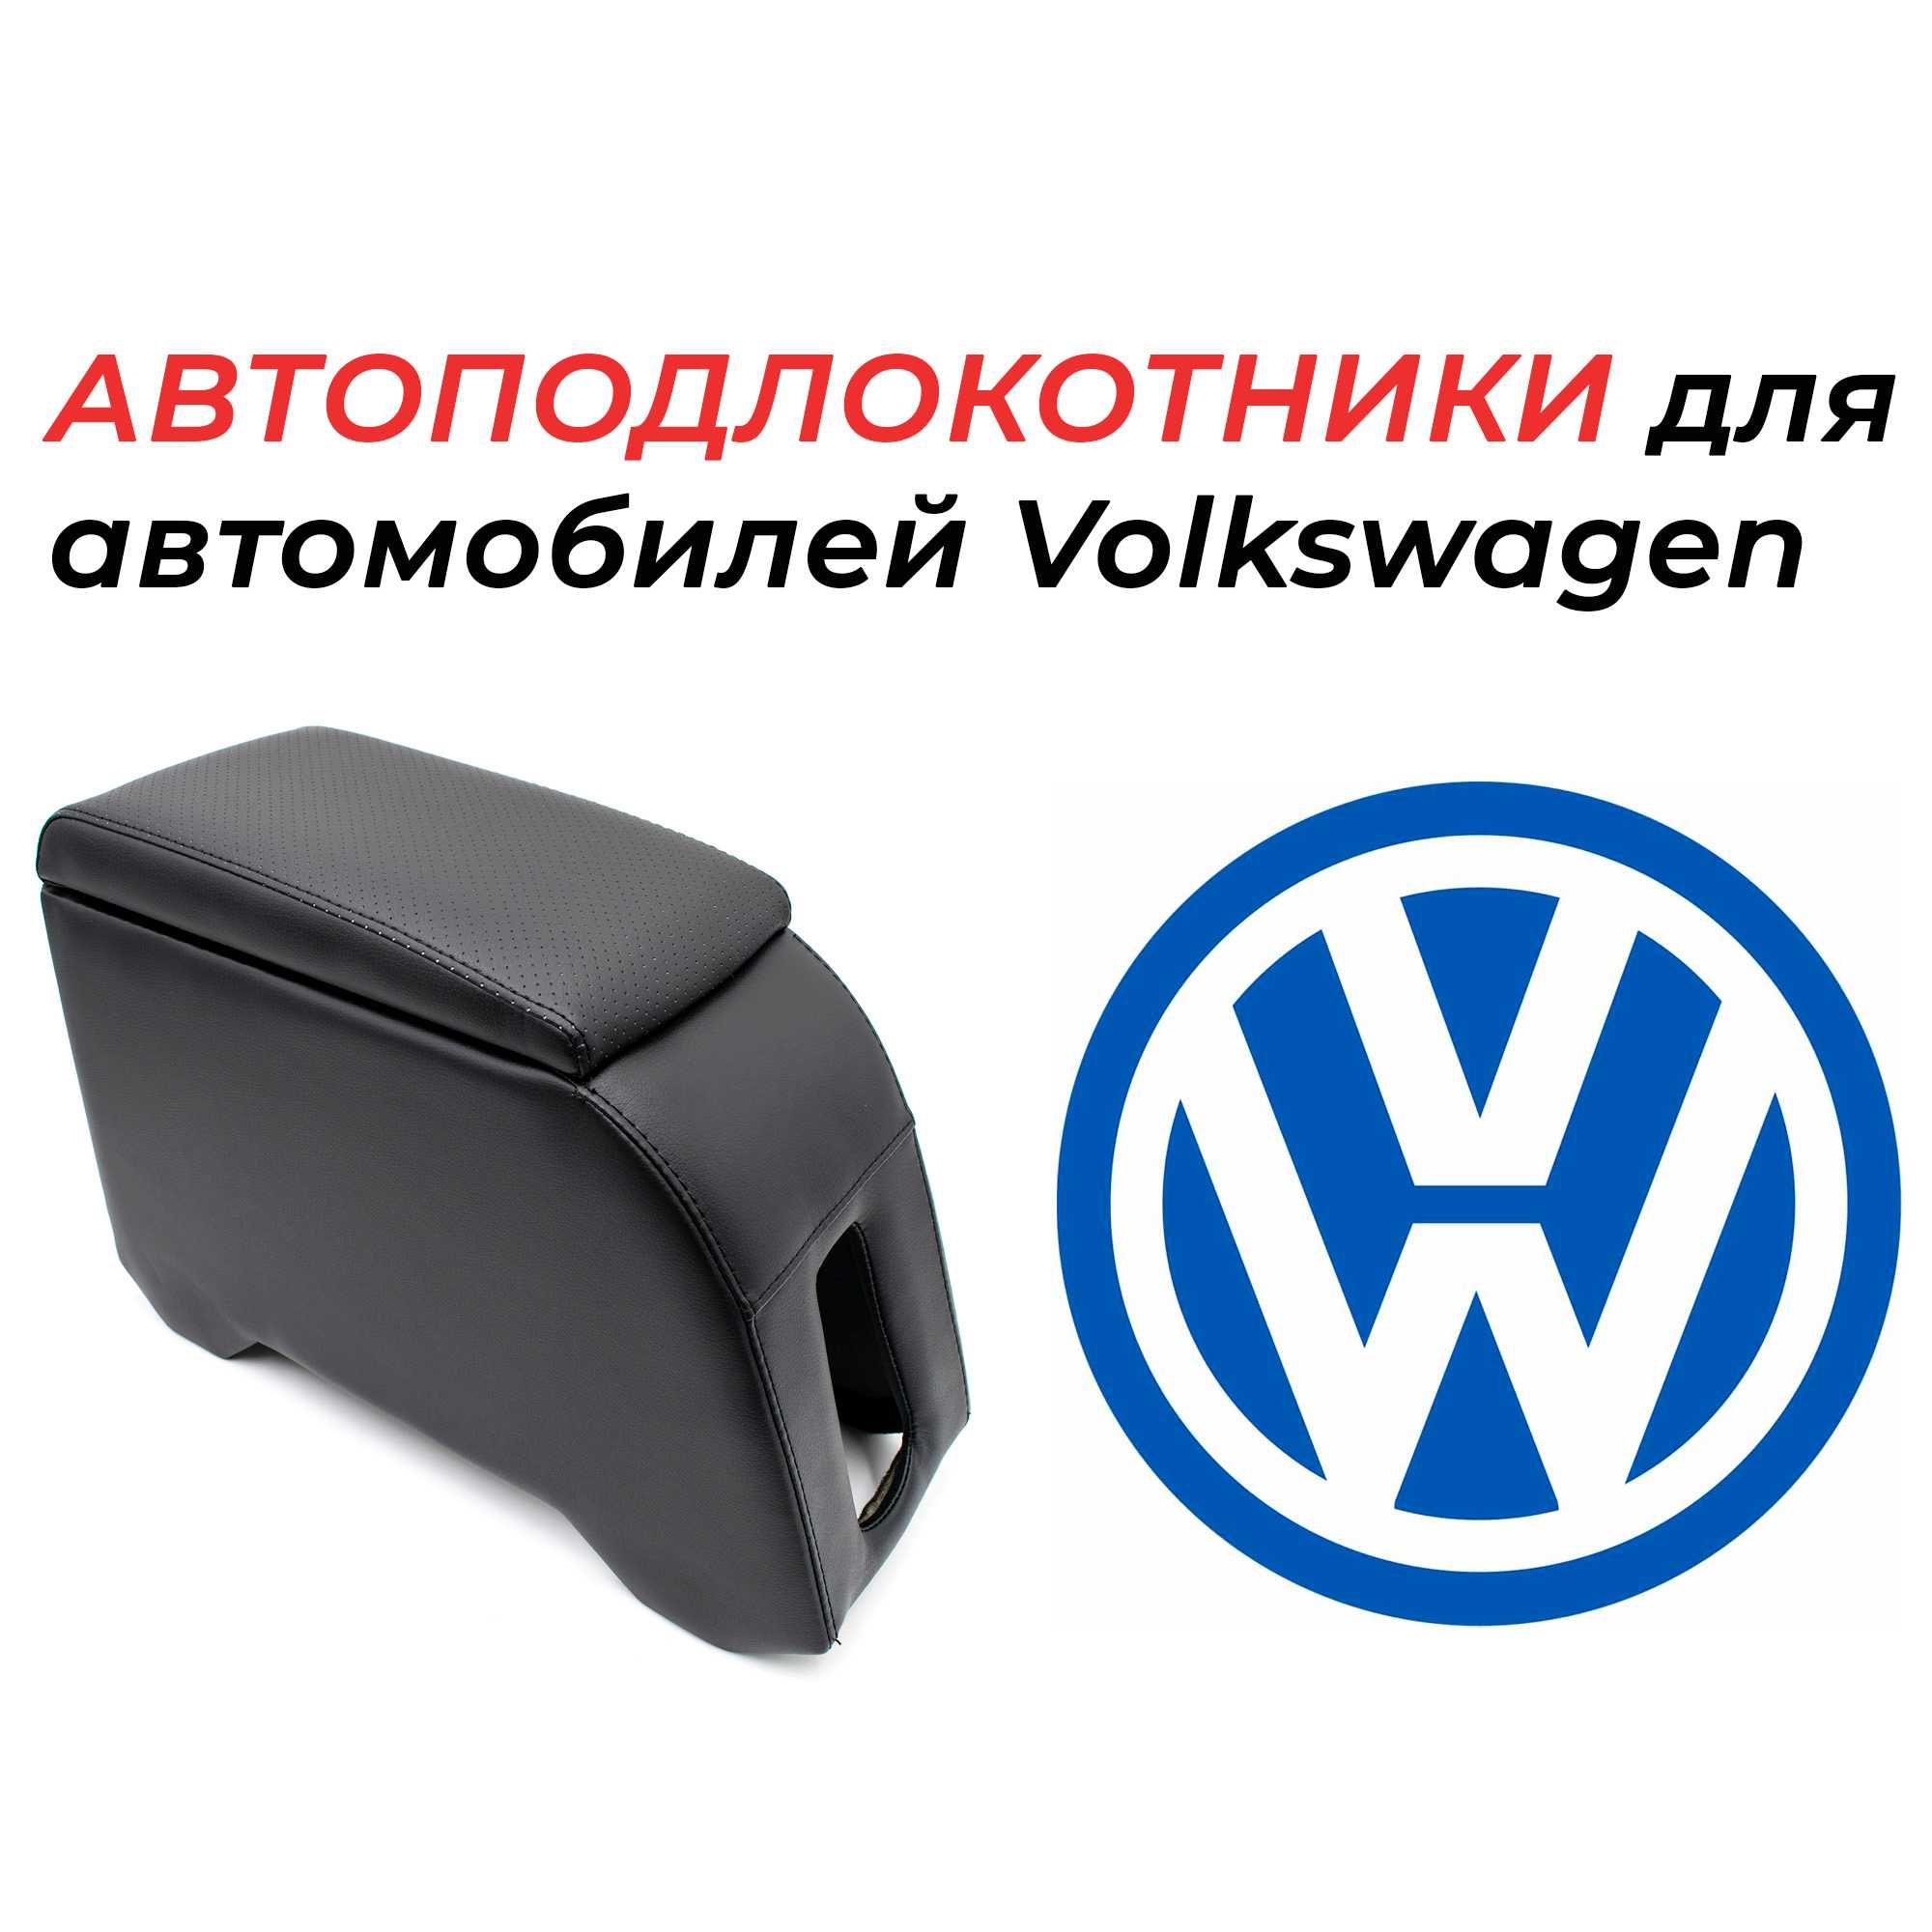 Подлокотники для автомобилей Volkswagen